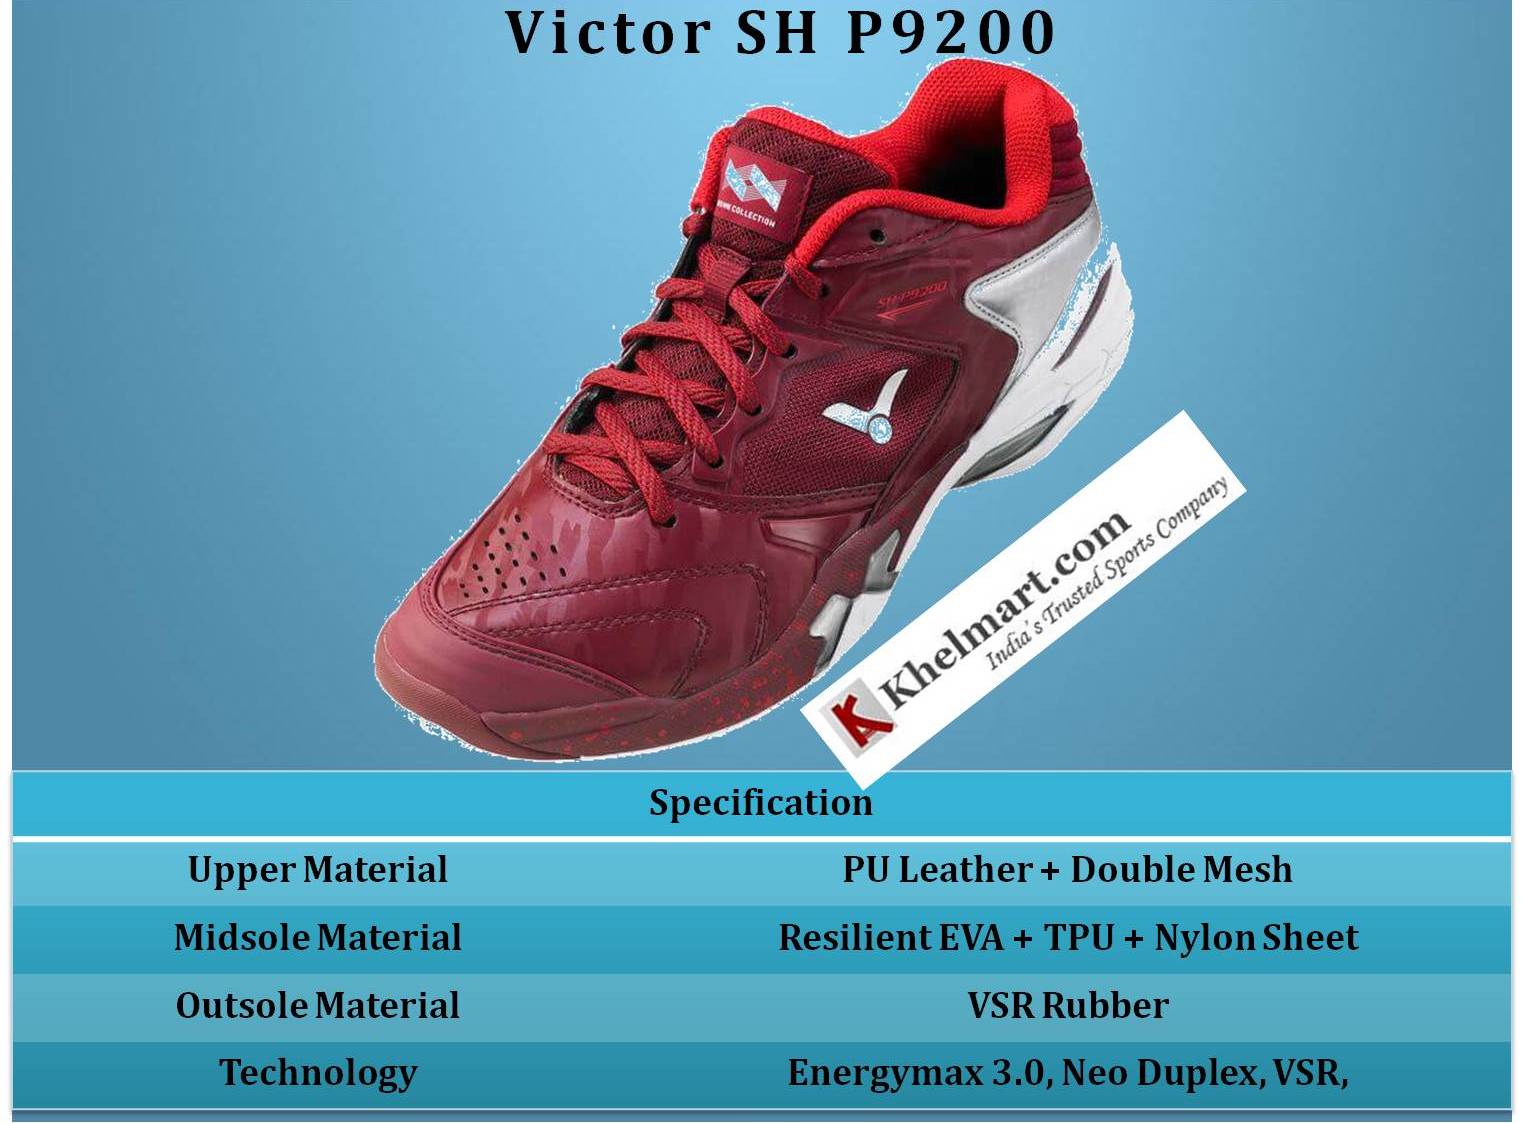 Victor_SH_P9200_Badminton_Shoes_Specification_Khelmart